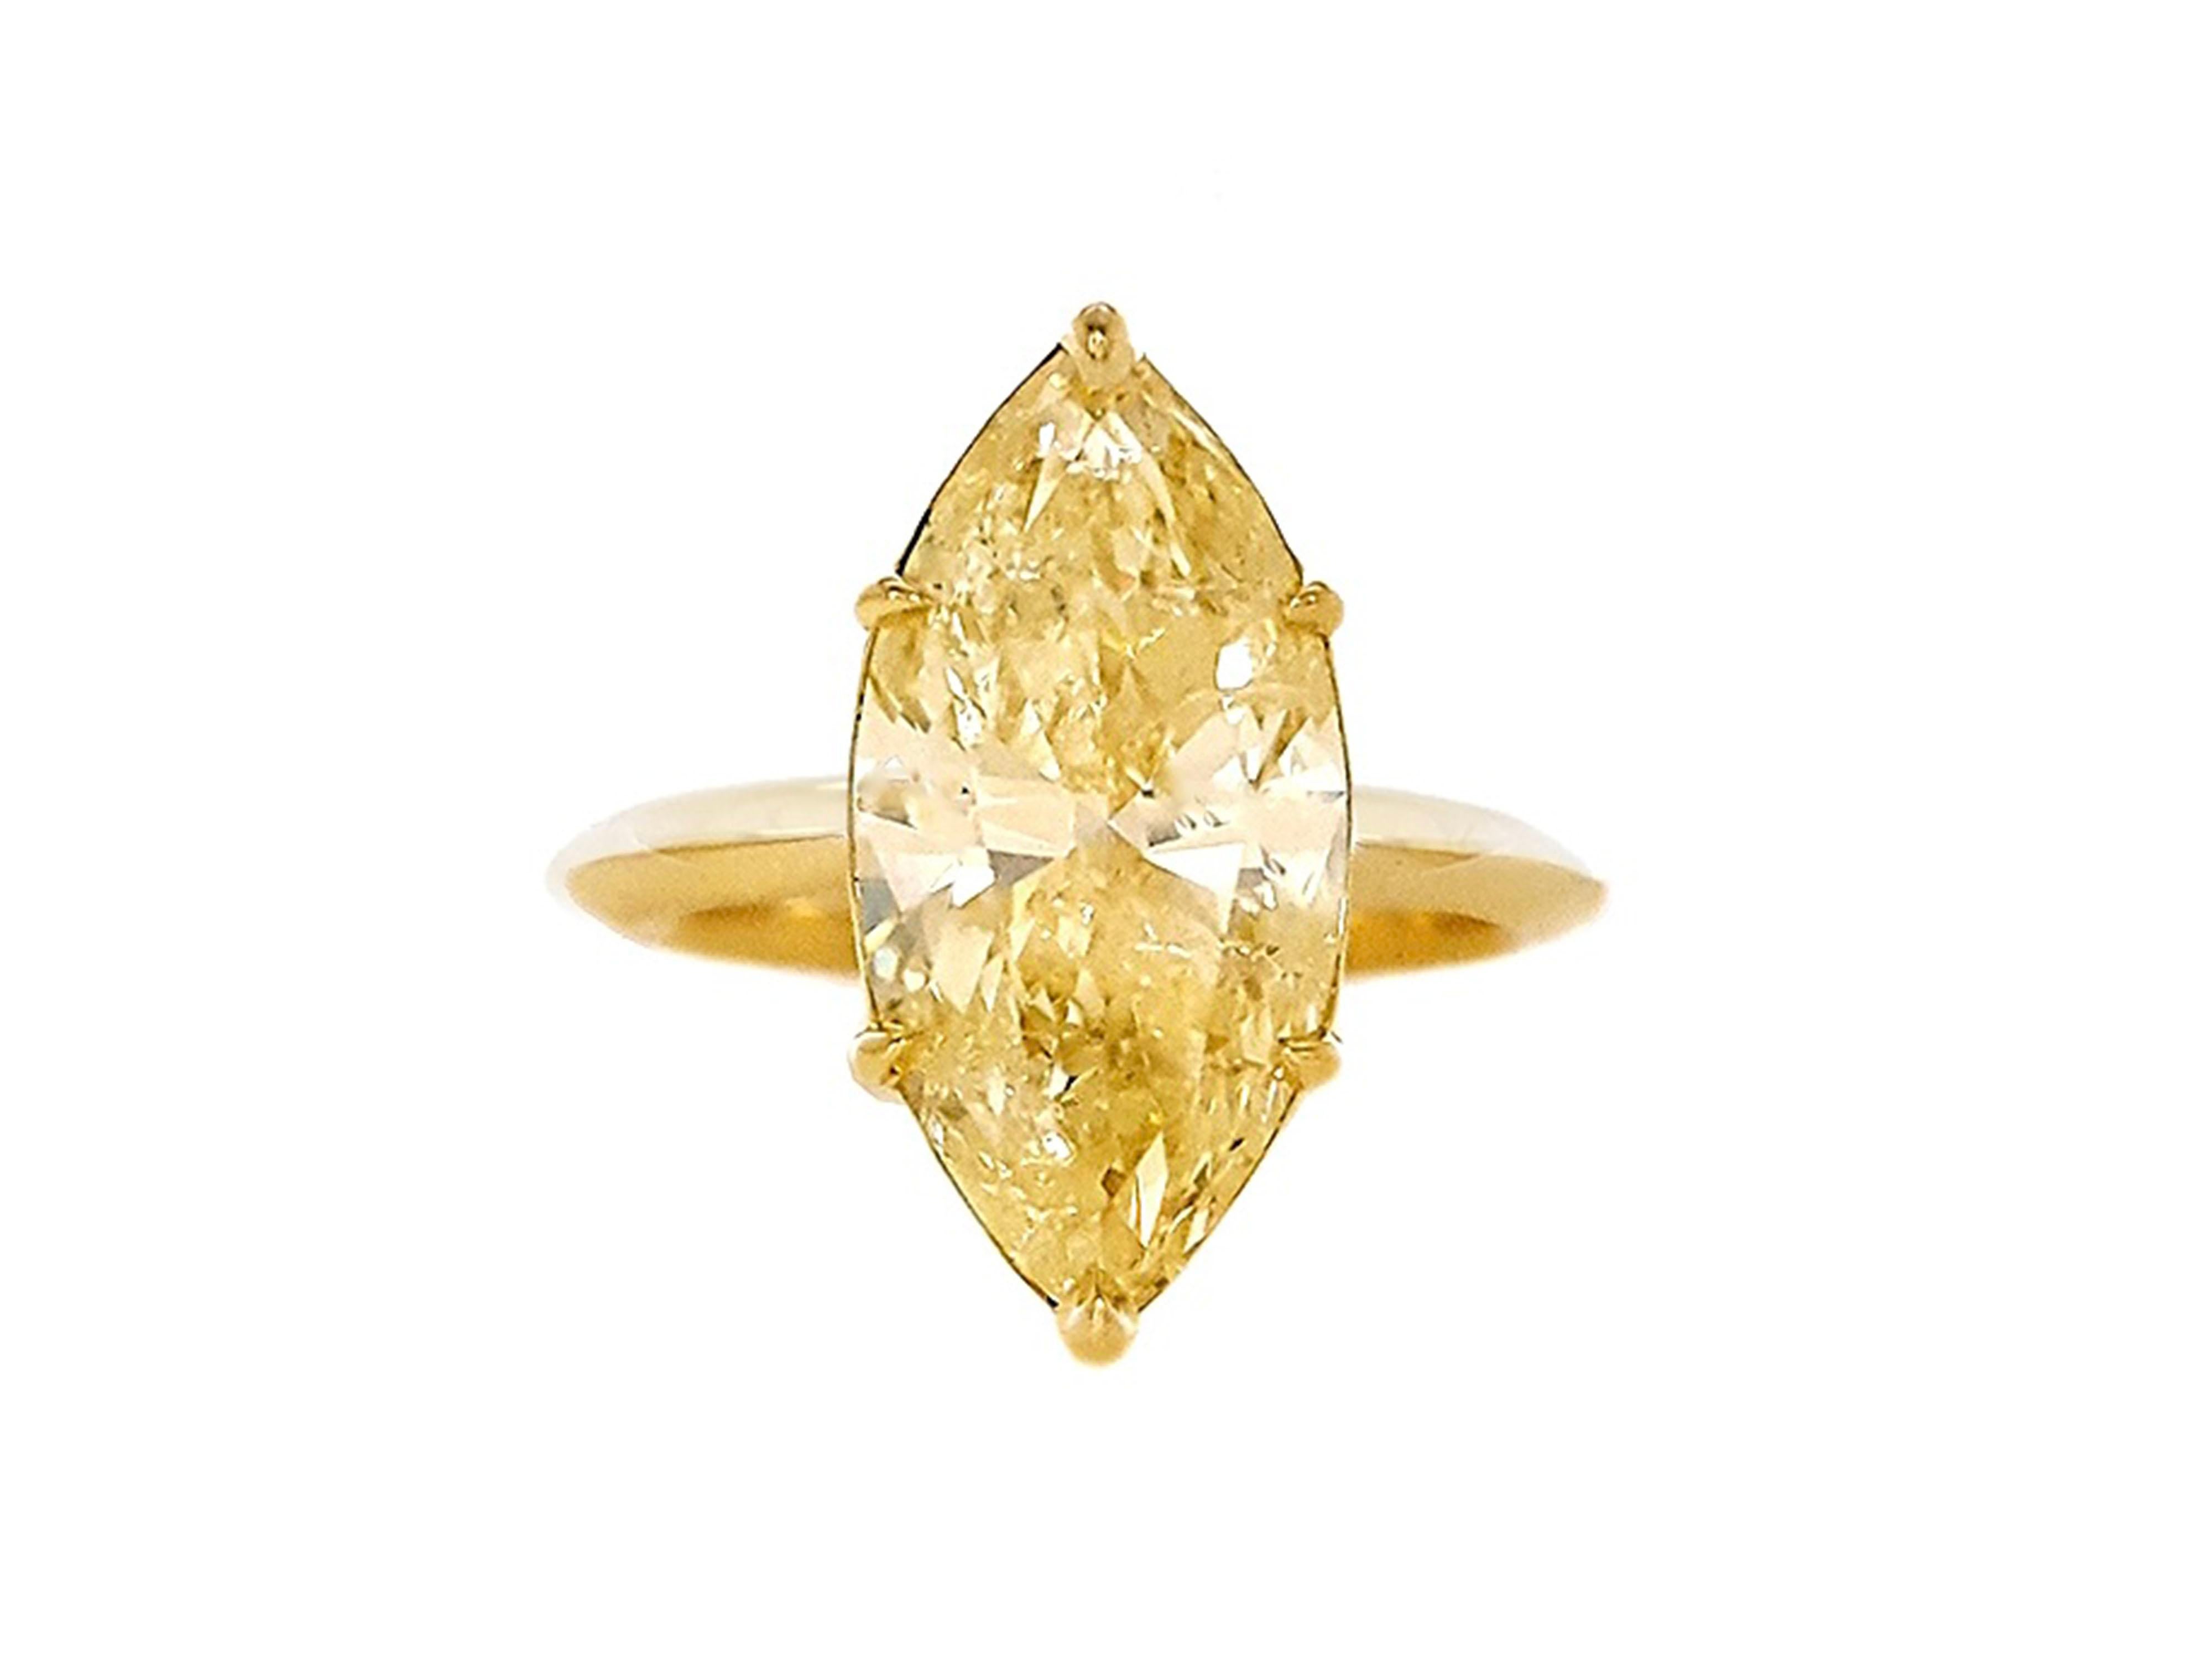 Cette bague de fiançailles absolument stupéfiante est ornée d'un diamant jaune de fantaisie de 5,18 carats, taillé en forme de marquise, qui scintille et brille à chaque mouvement. Bague de fiançailles en or 18 carats certifiée par le GIA. La